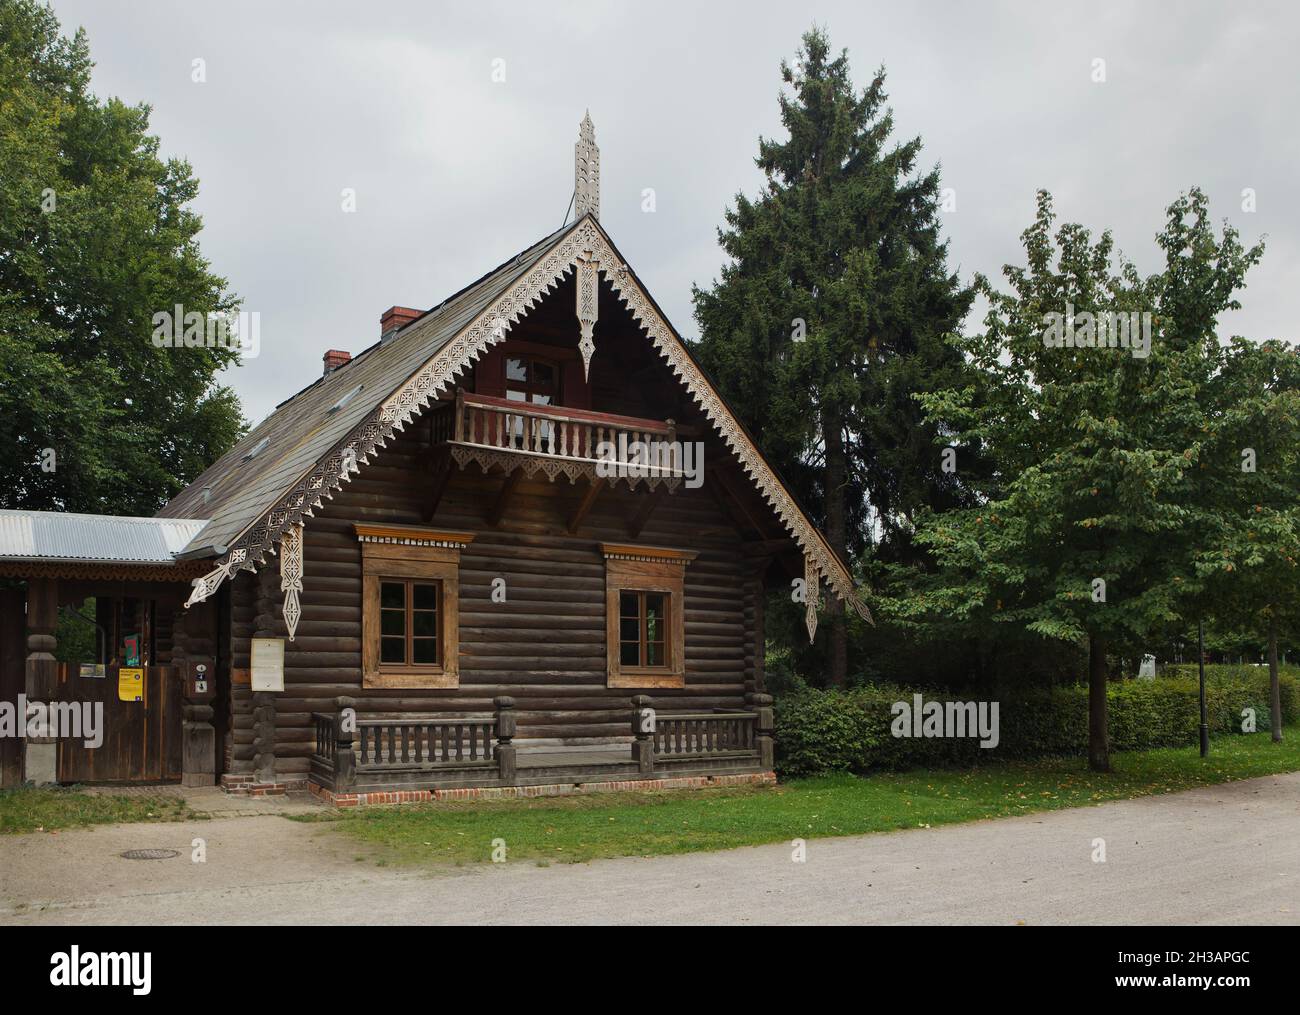 Eines der traditionellen russischen Holzhäuser in der Russischen Kolonie Alexandrowka (Russische Kolonie Alexandrowka) in Potsdam. Stockfoto